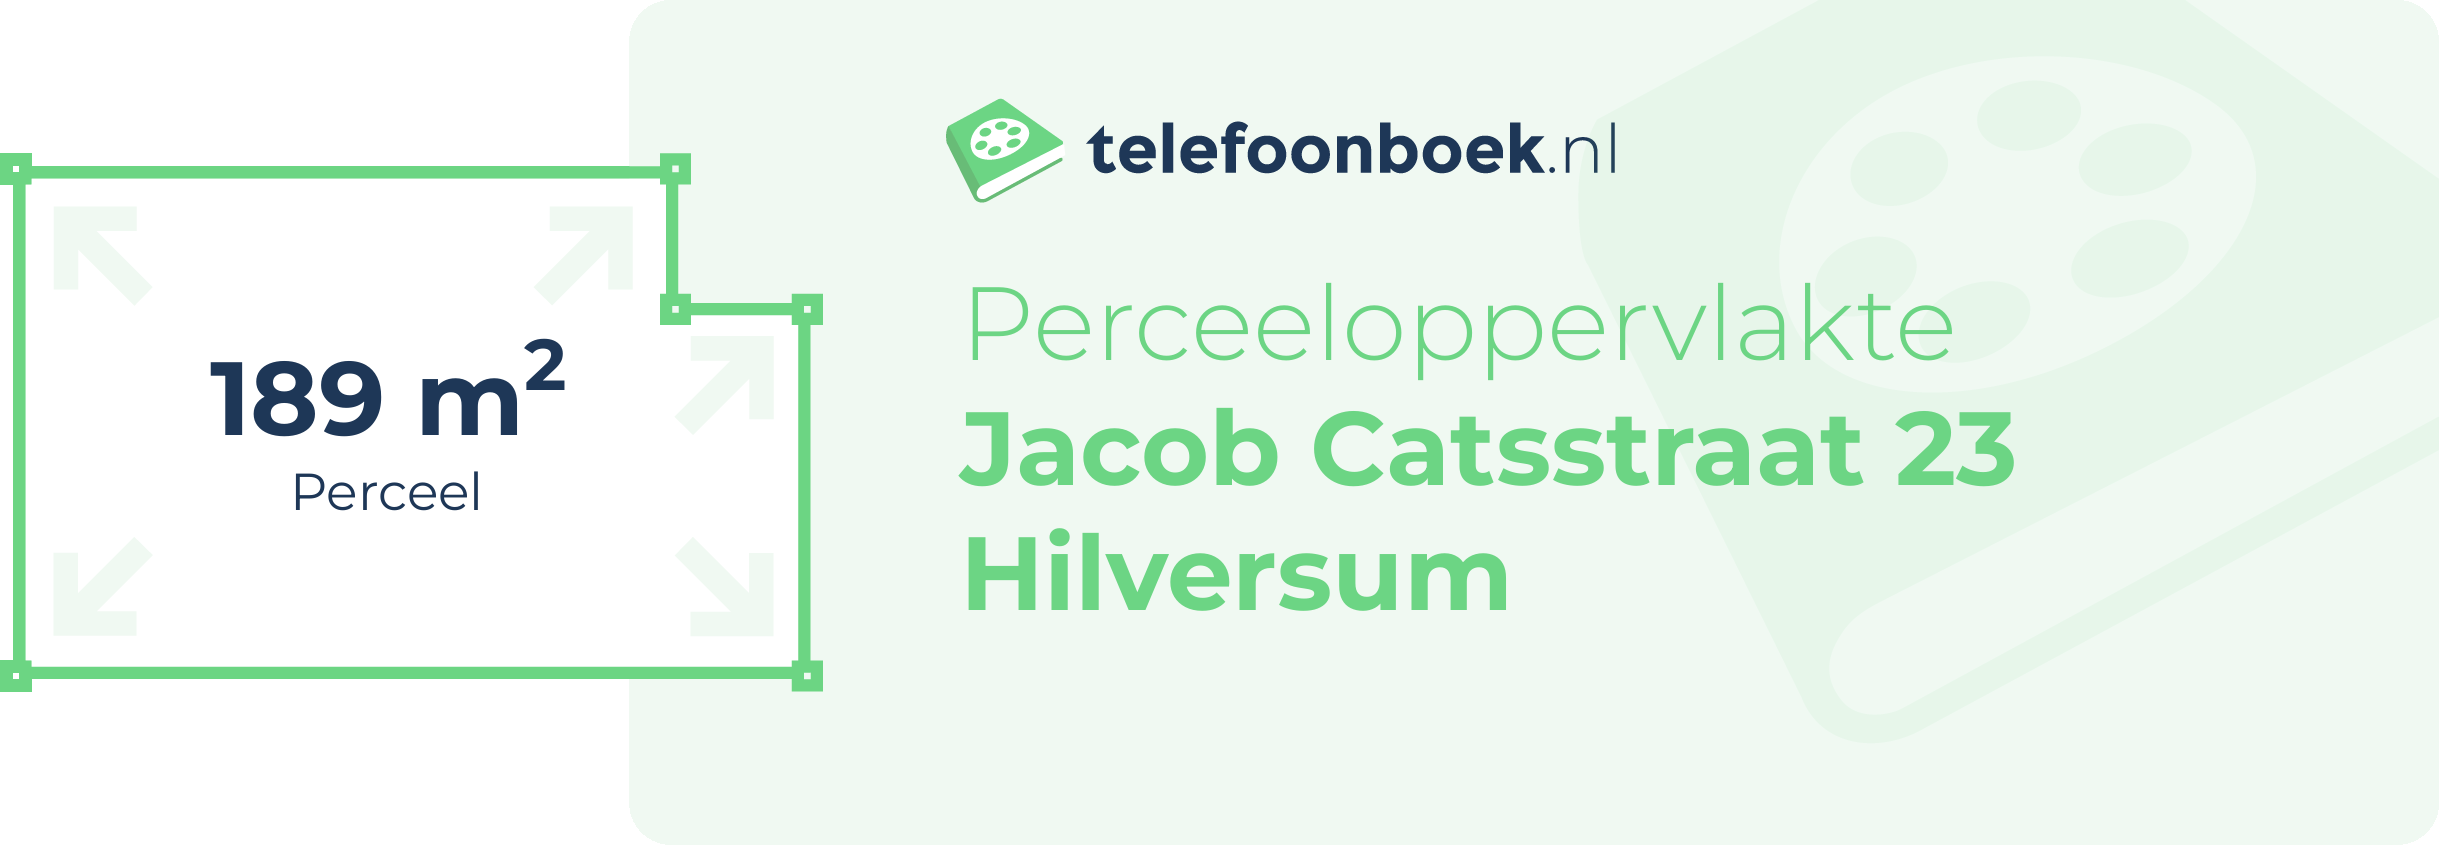 Perceeloppervlakte Jacob Catsstraat 23 Hilversum